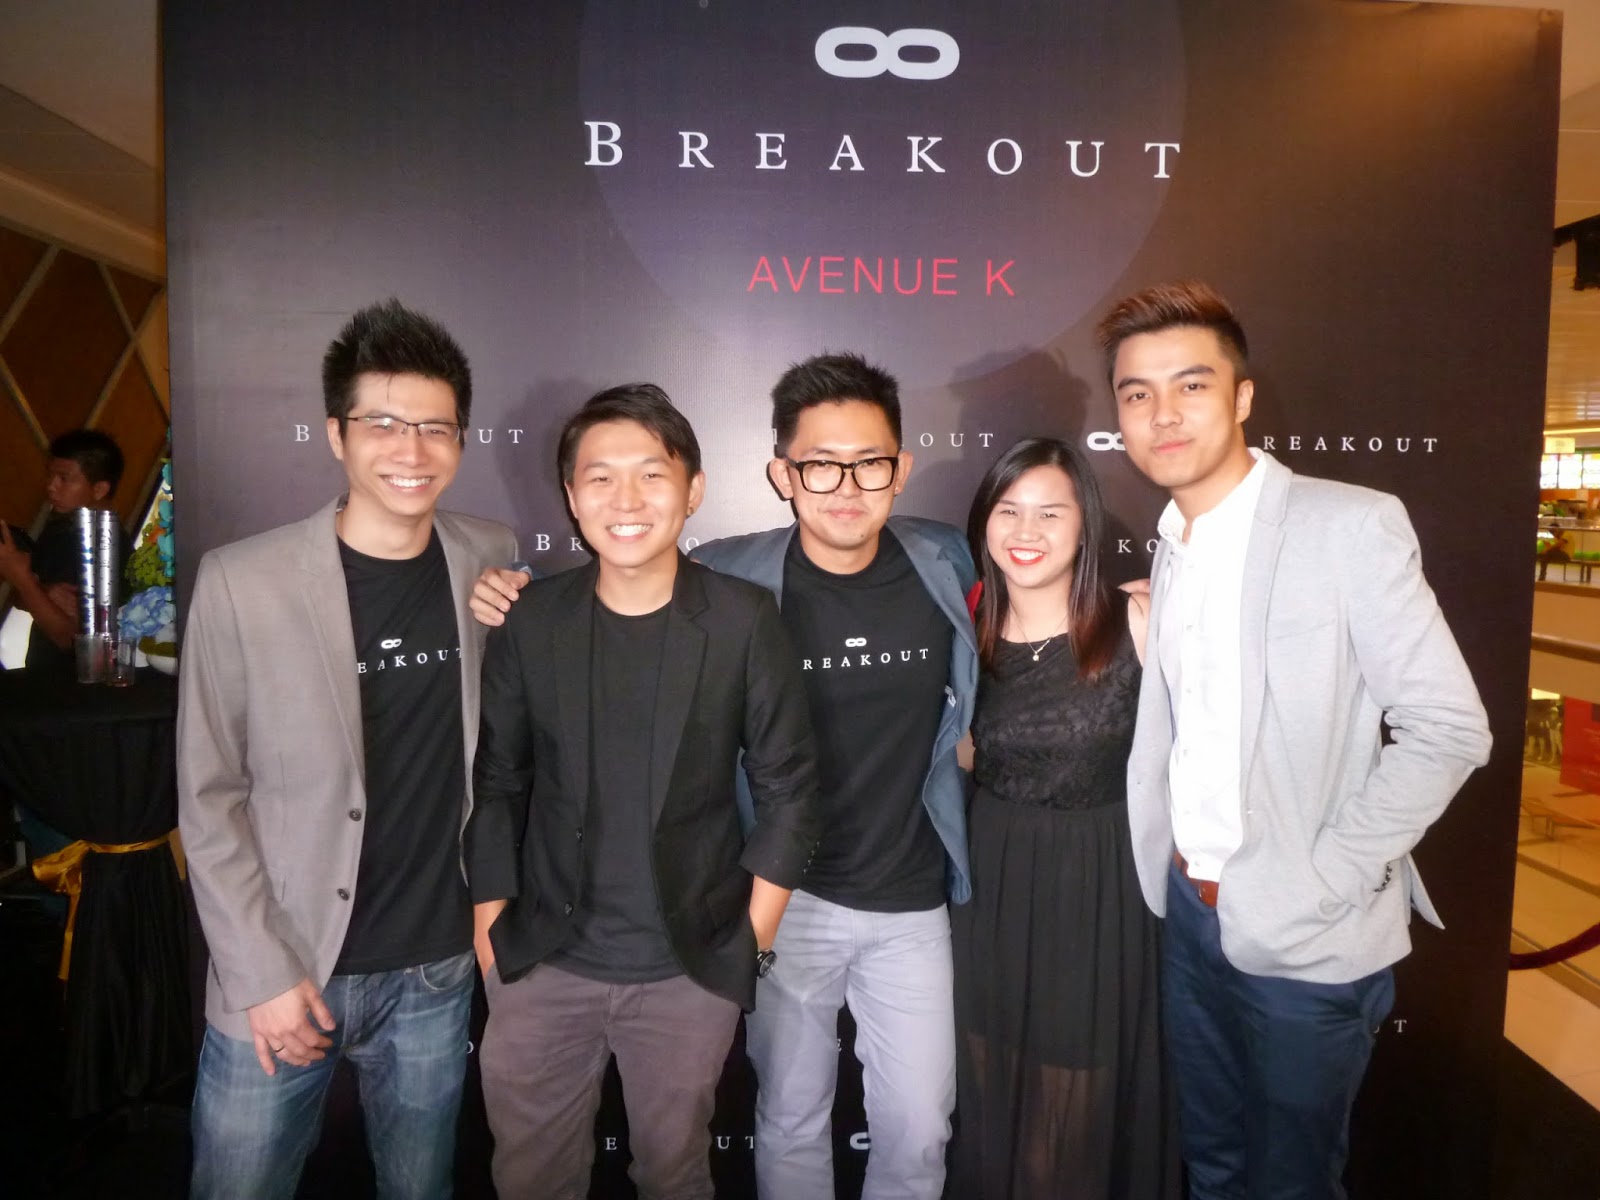 Breakout Avenue K